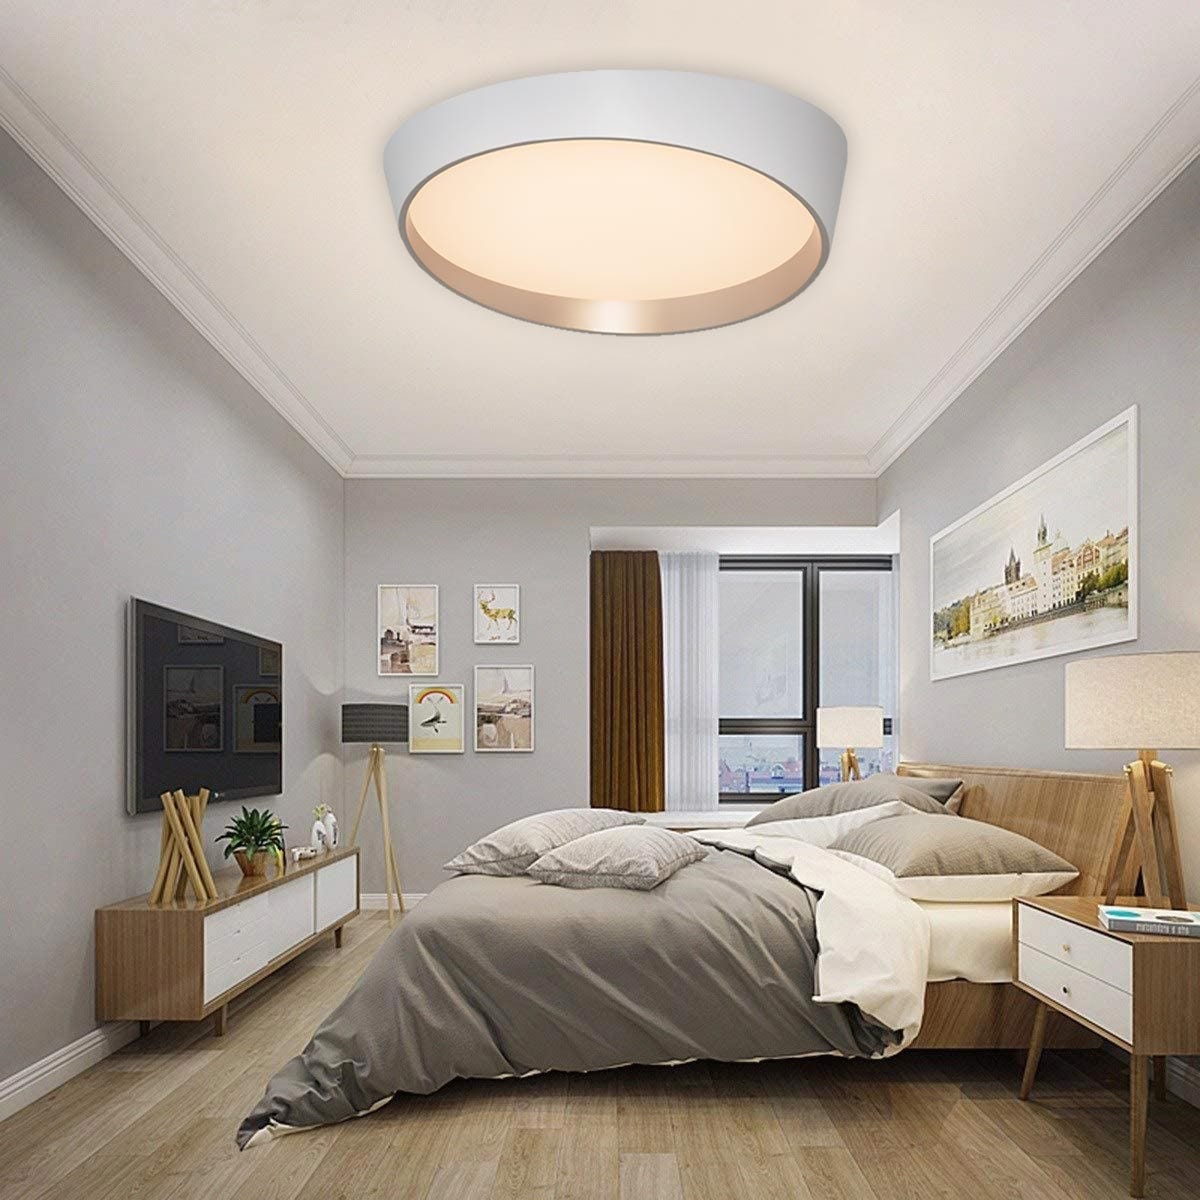 Plafoniera moderna LED 46W resa 360W lampada soffitto tonda ellisse cornice  dorata luce camera letto hotel cucina ufficio salotto 230V 3000K